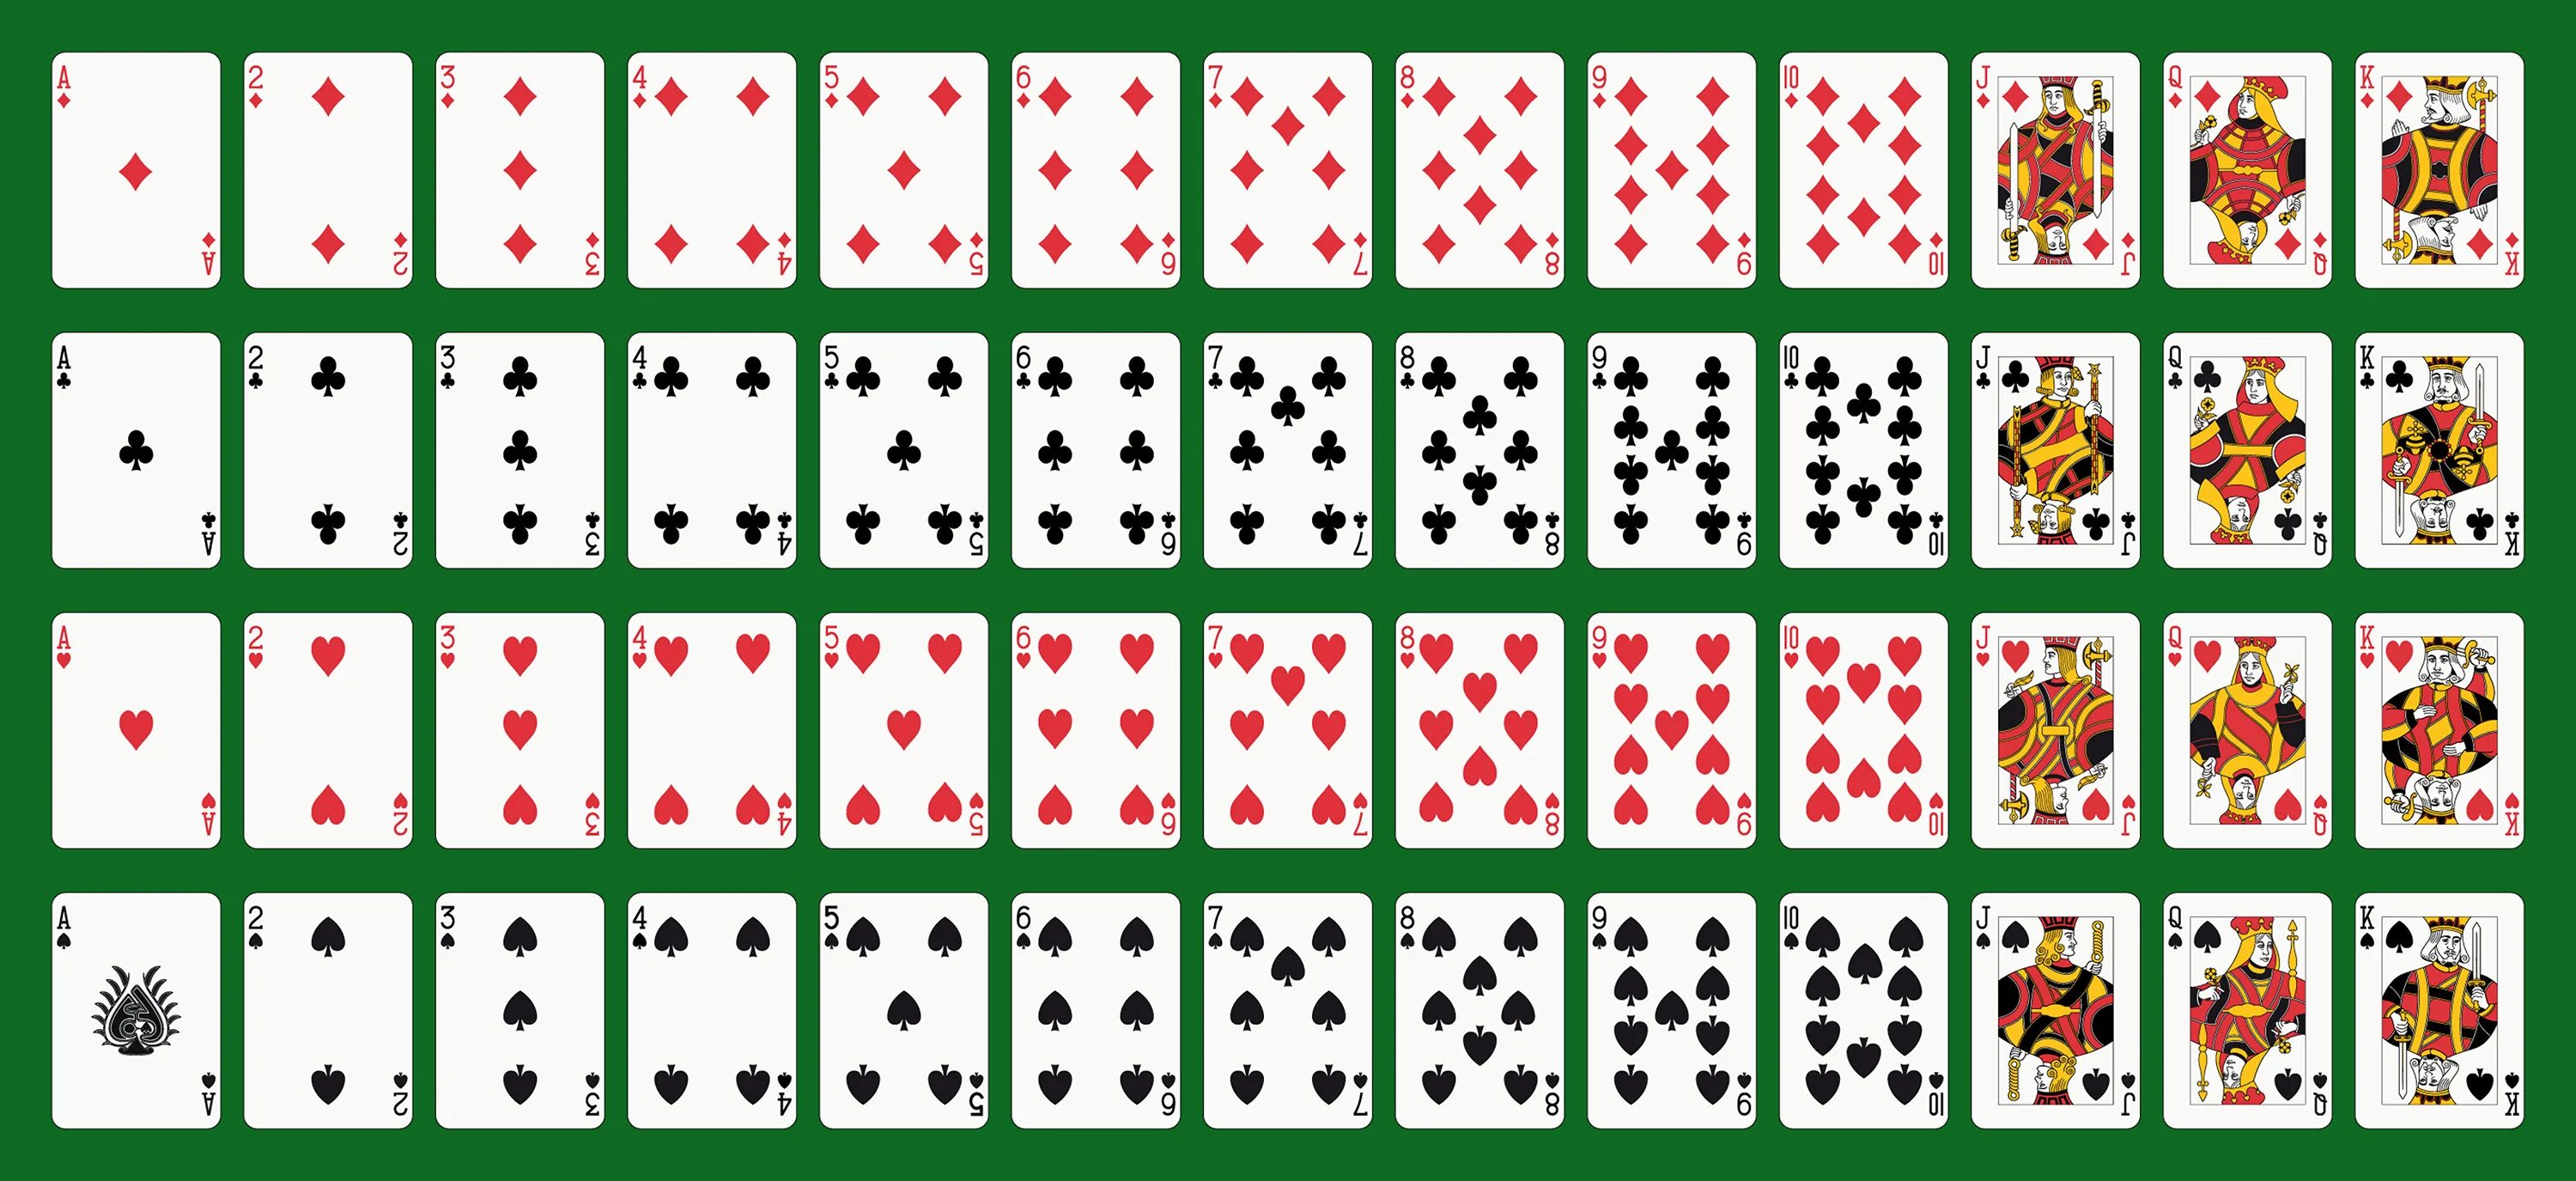 Колода в 52 карты в холдеме. Игральная колода 52 карты. Standard 52-Card Deck. Распечатка карт игральных.